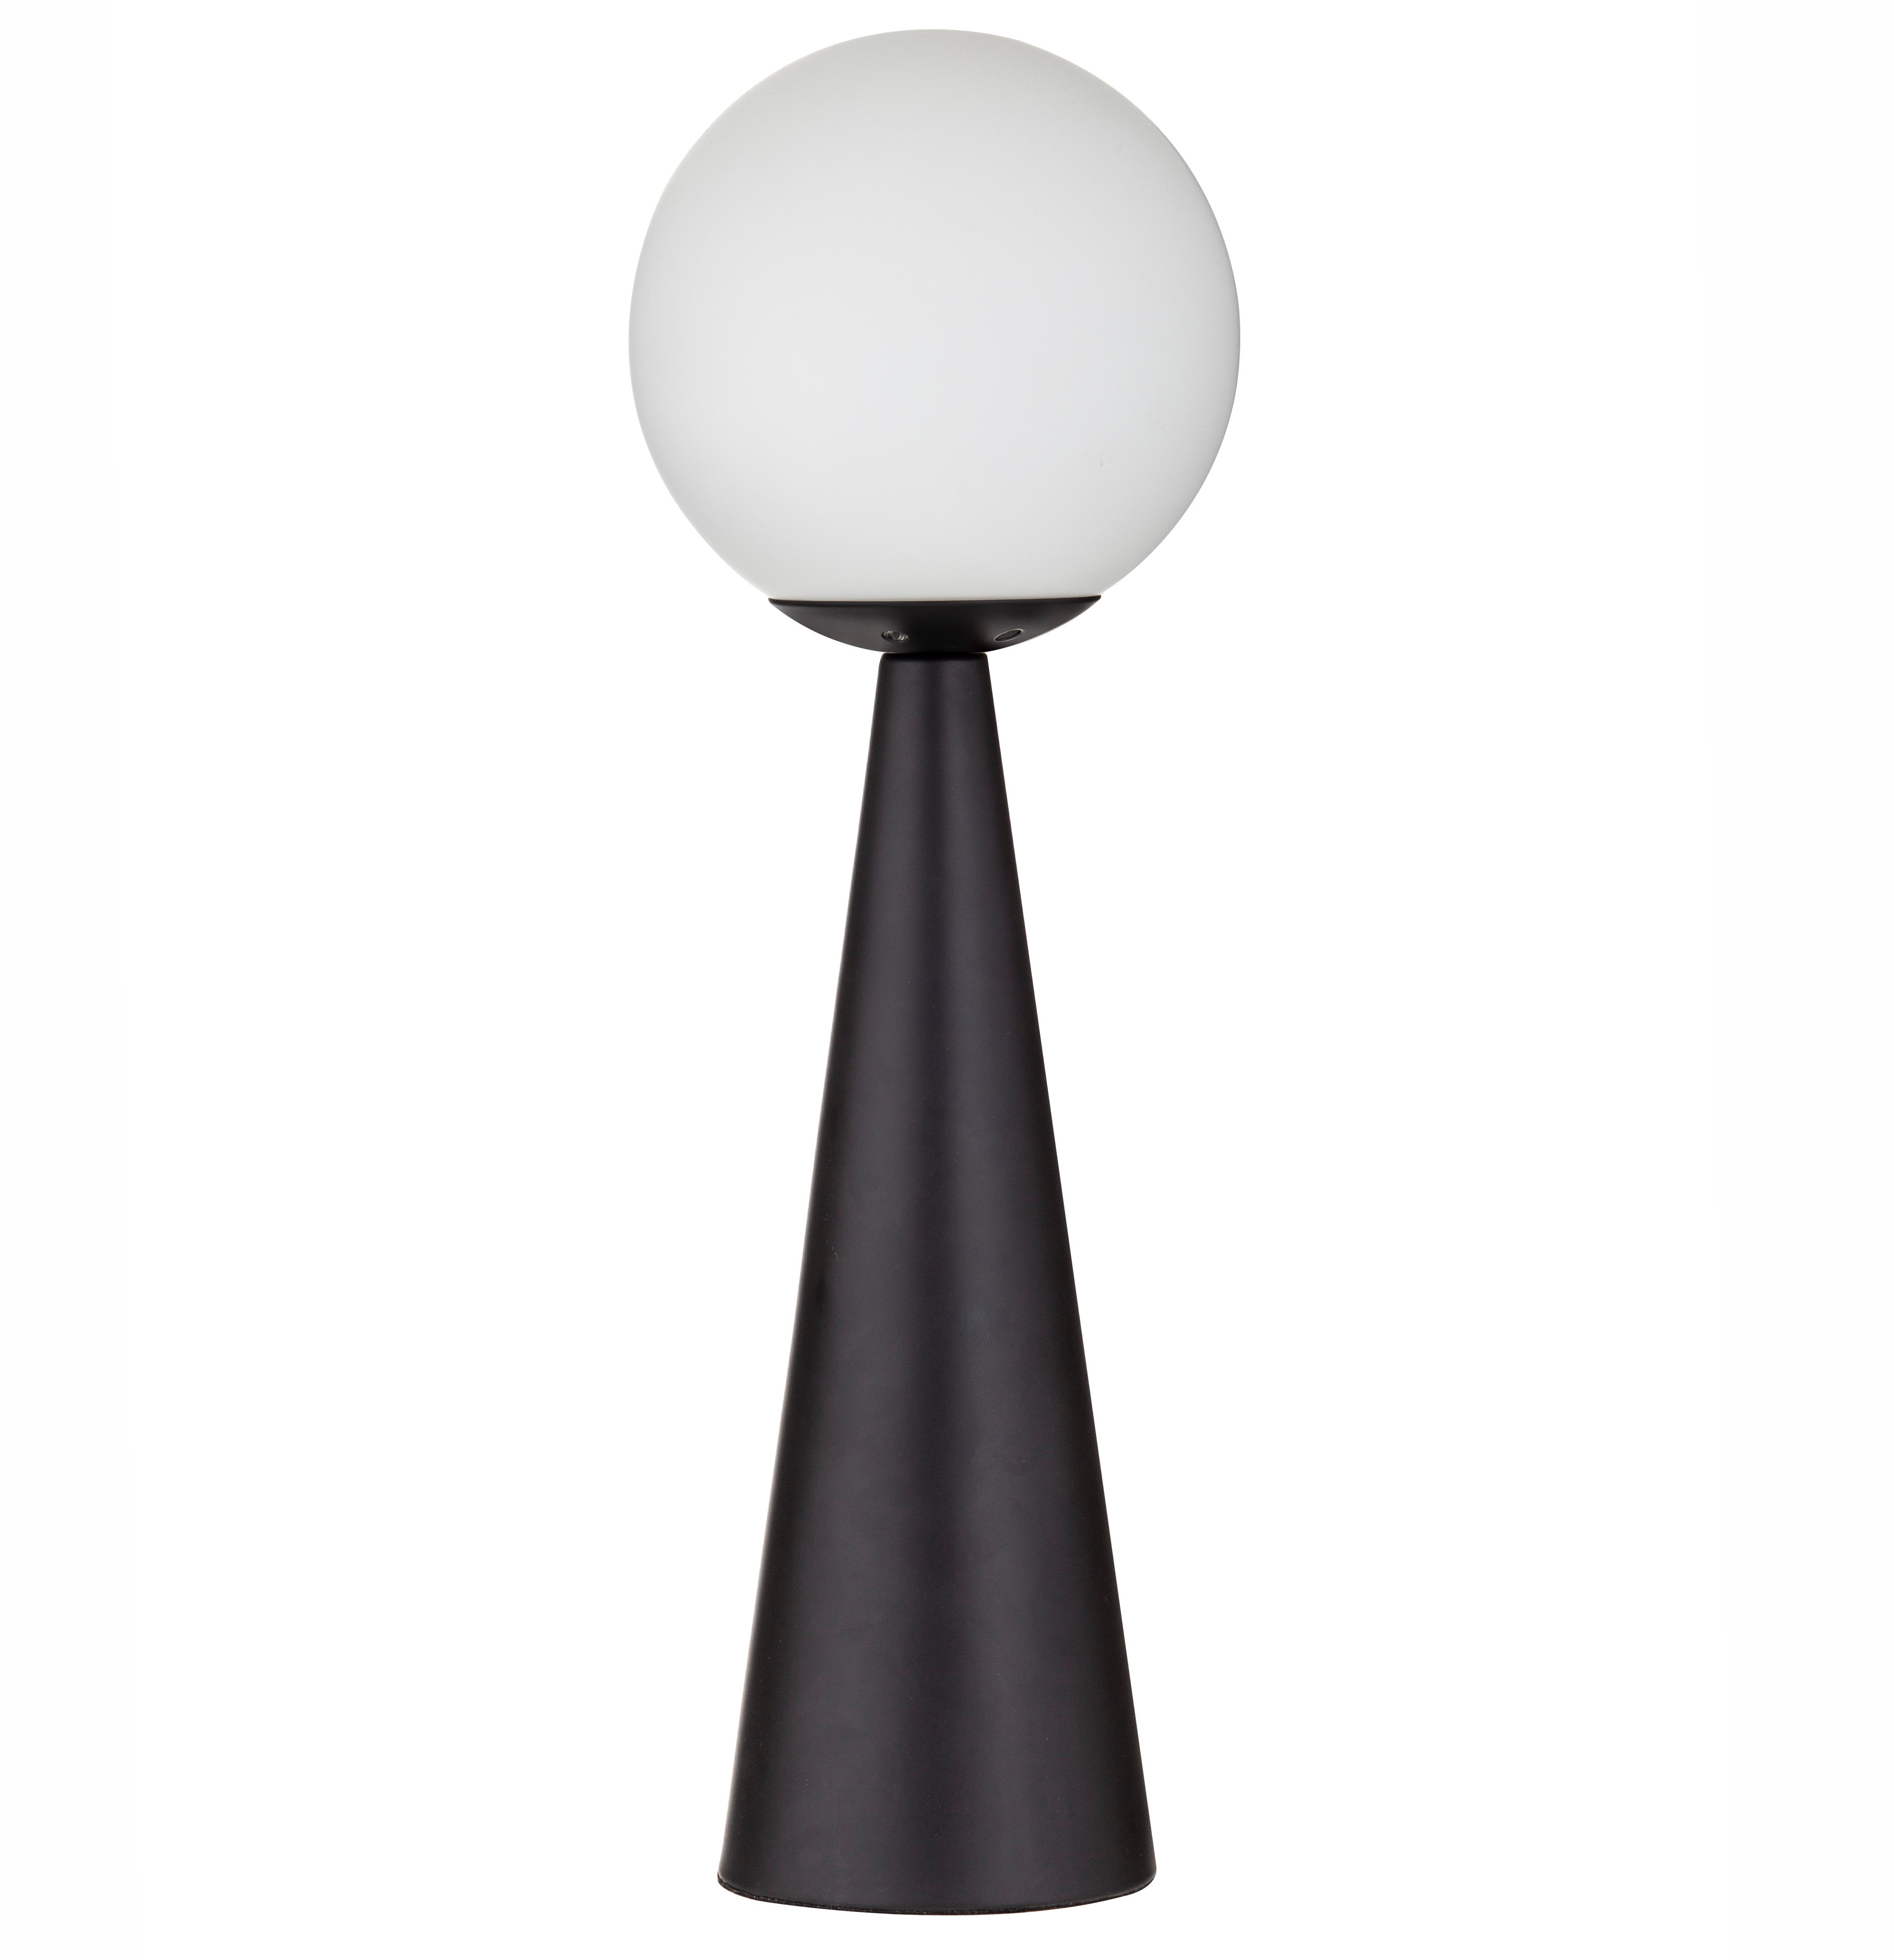 Amalfi Orion Bedside Table Lamp Modern Reading Night Light Desk Lamp - Black/White